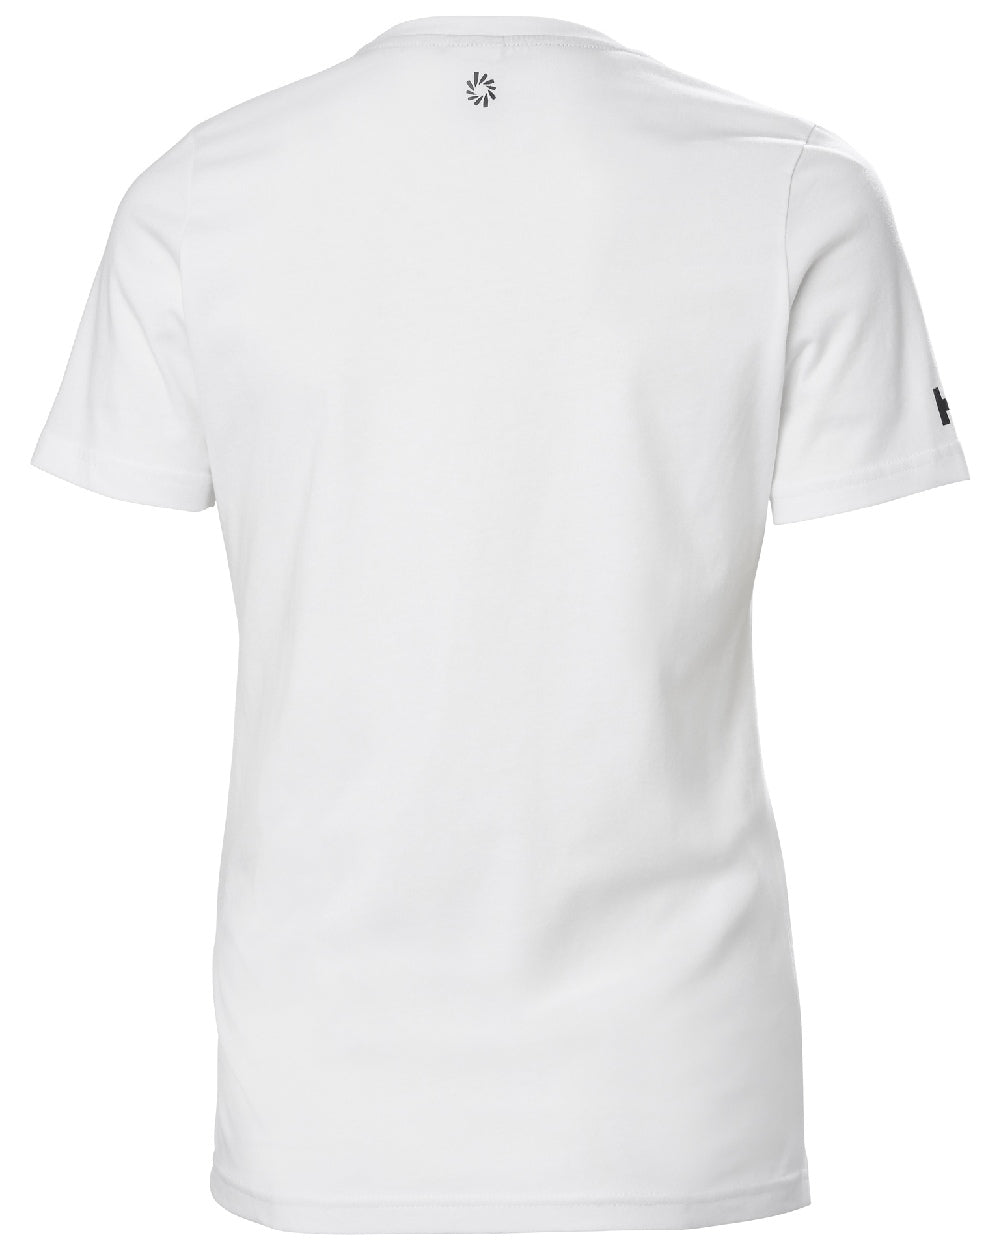 White lv coloured Helly Hansen Womens Ocean Race T-Shirt on white background 